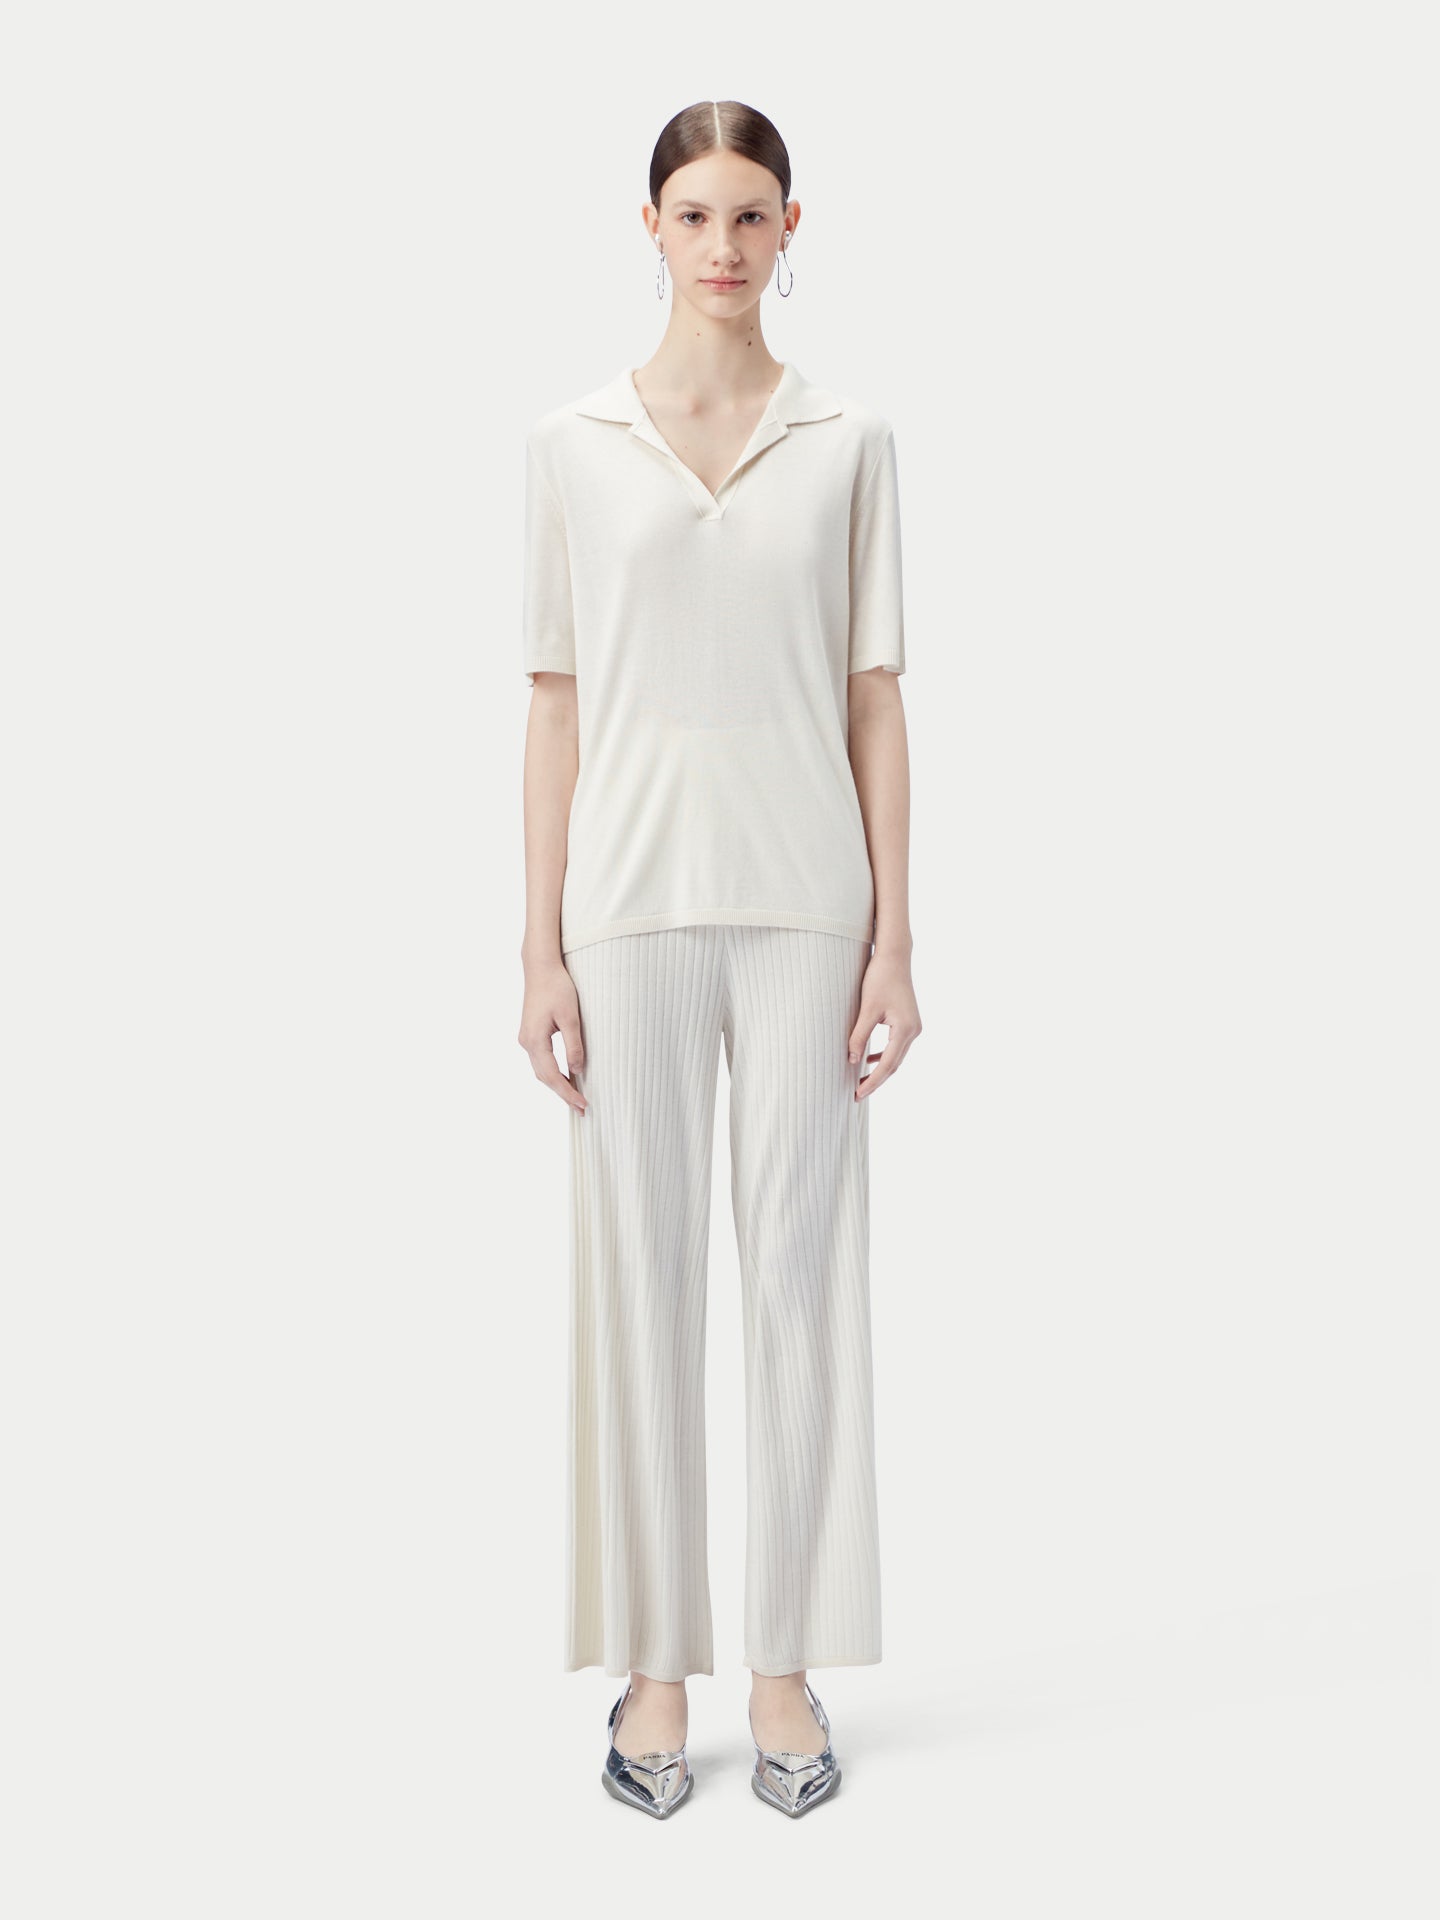 Women's Silk Cashmere Polo Shirt Whisper White - Gobi Cashmere